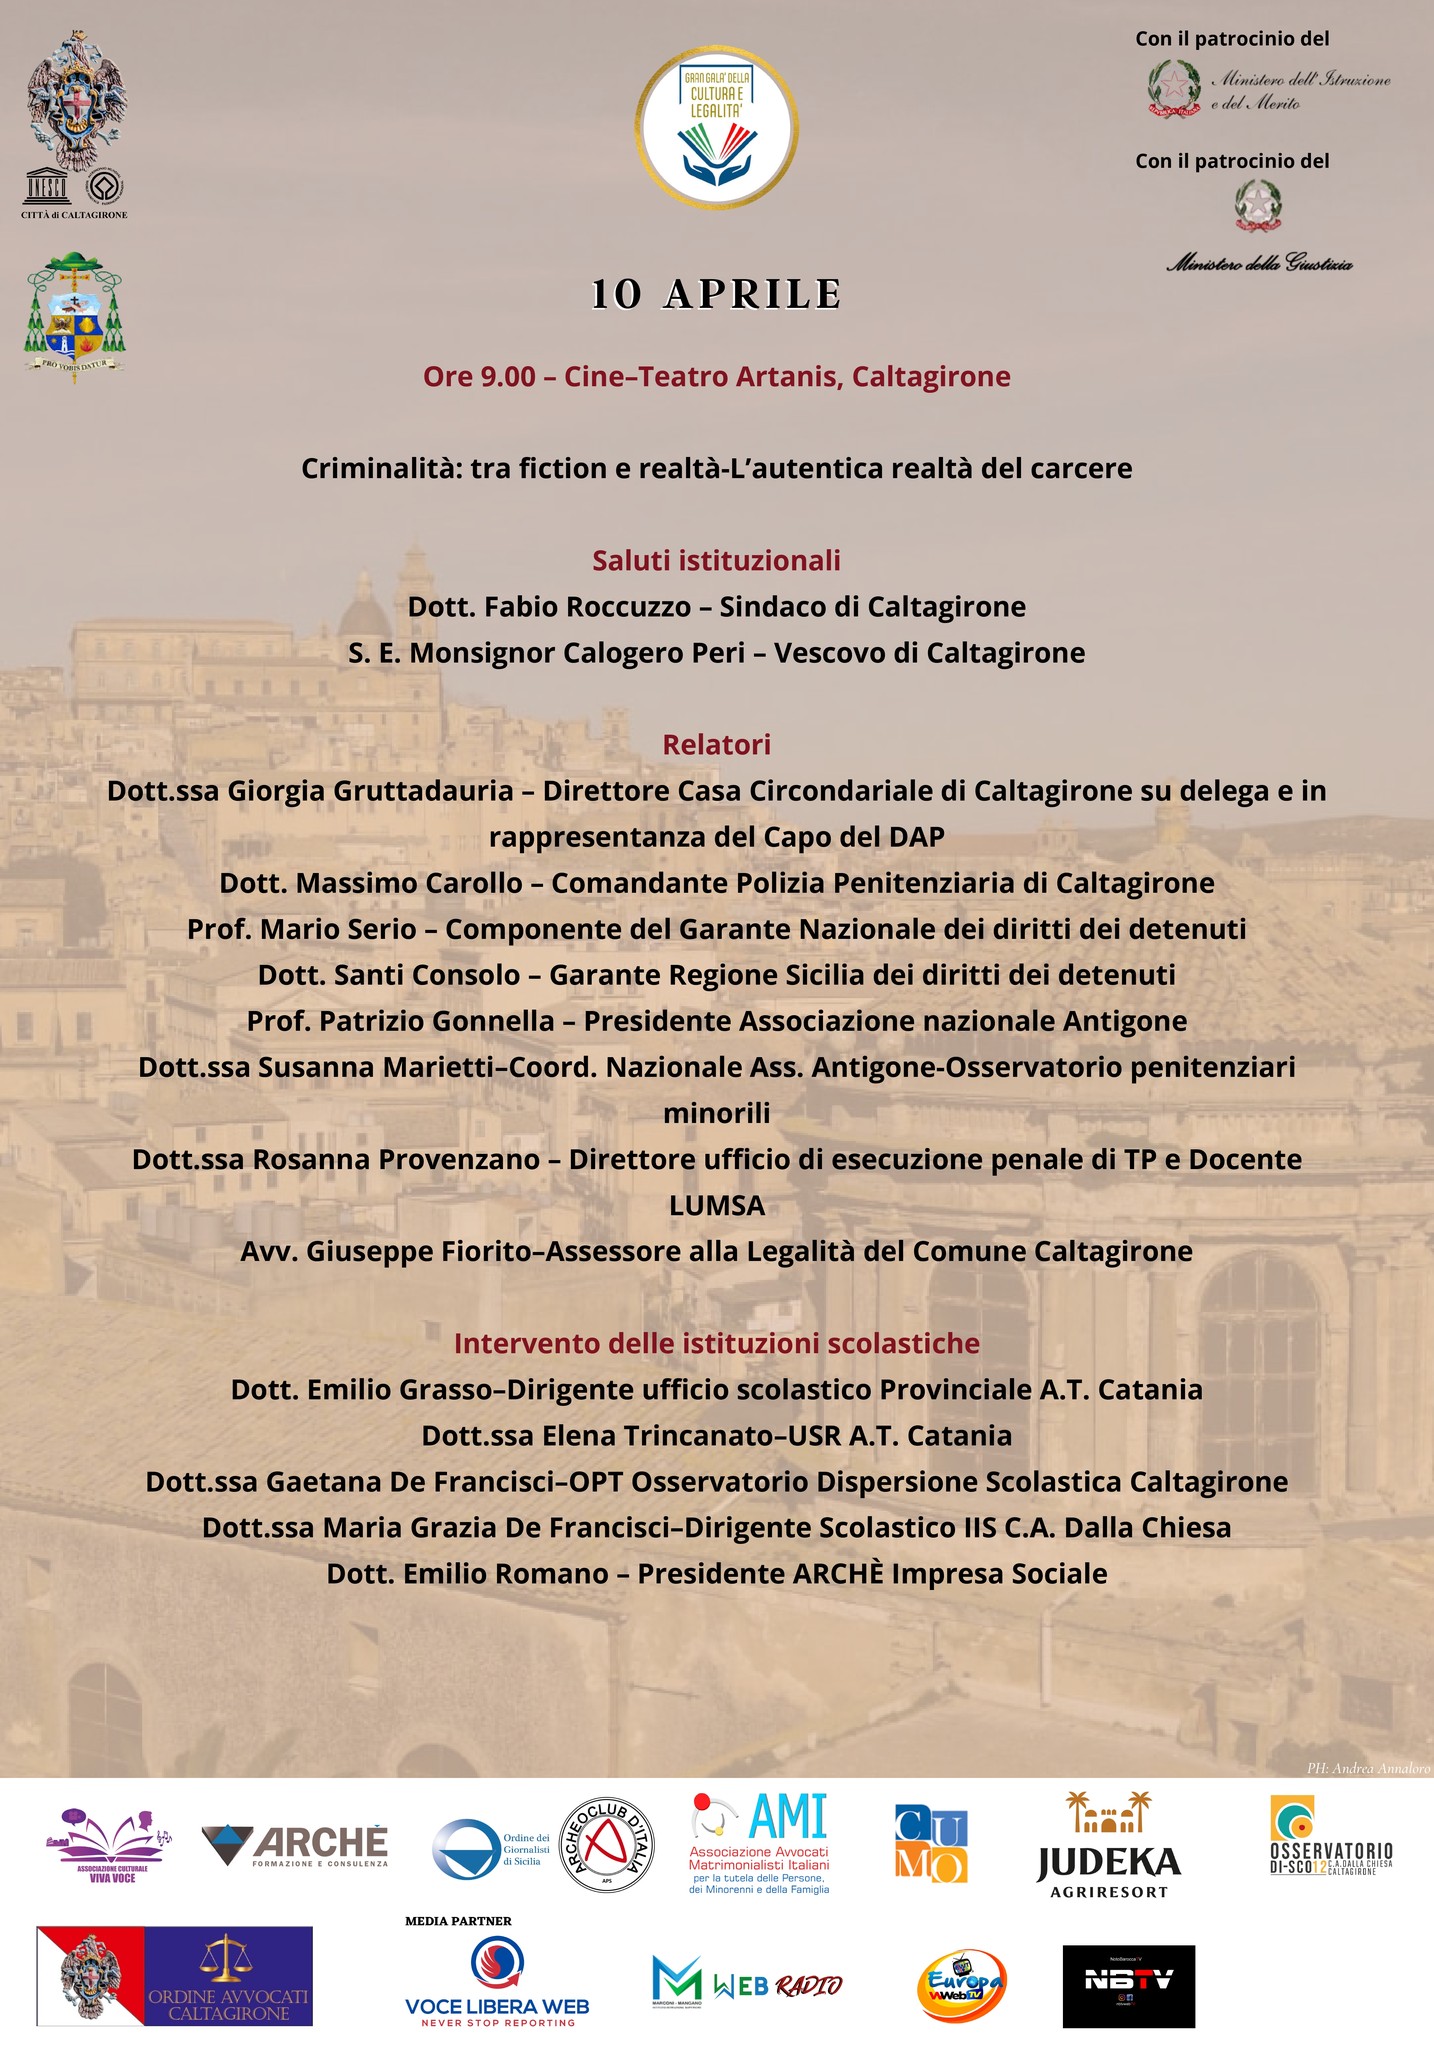 GRAN-GALA-2 Quarta edizione del Gran Galà della Cultura e della Legalità: a Caltagirone, mercoledì 10 aprile